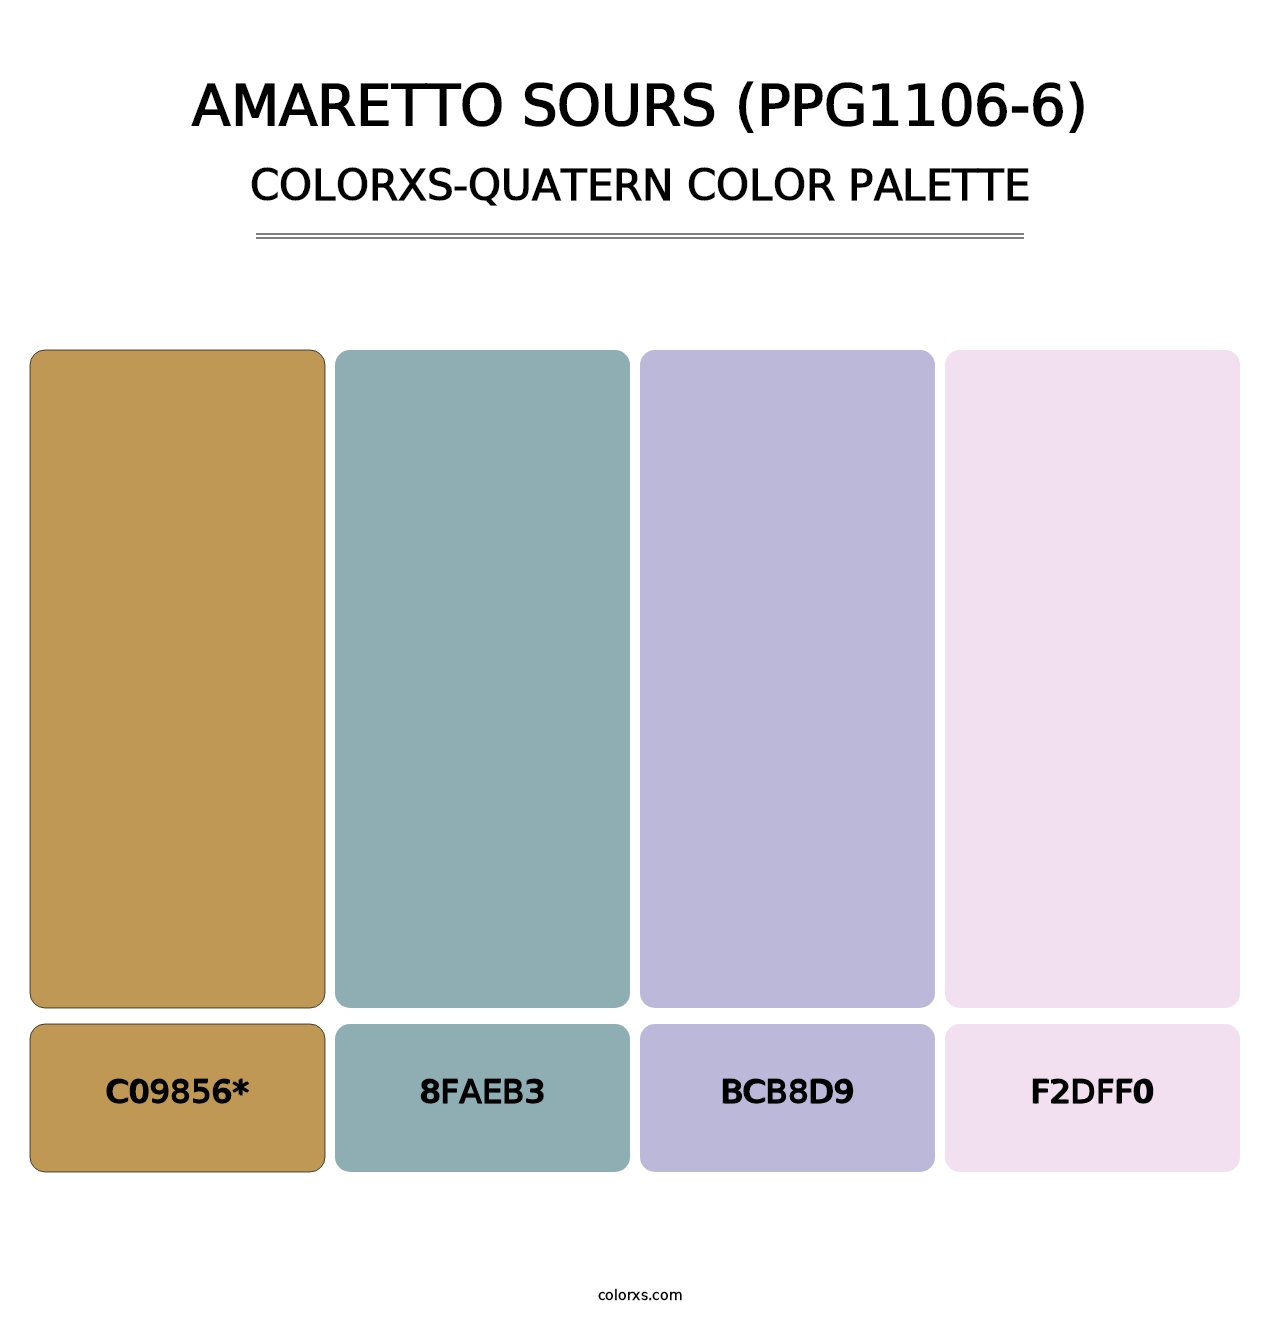 Amaretto Sours (PPG1106-6) - Colorxs Quatern Palette